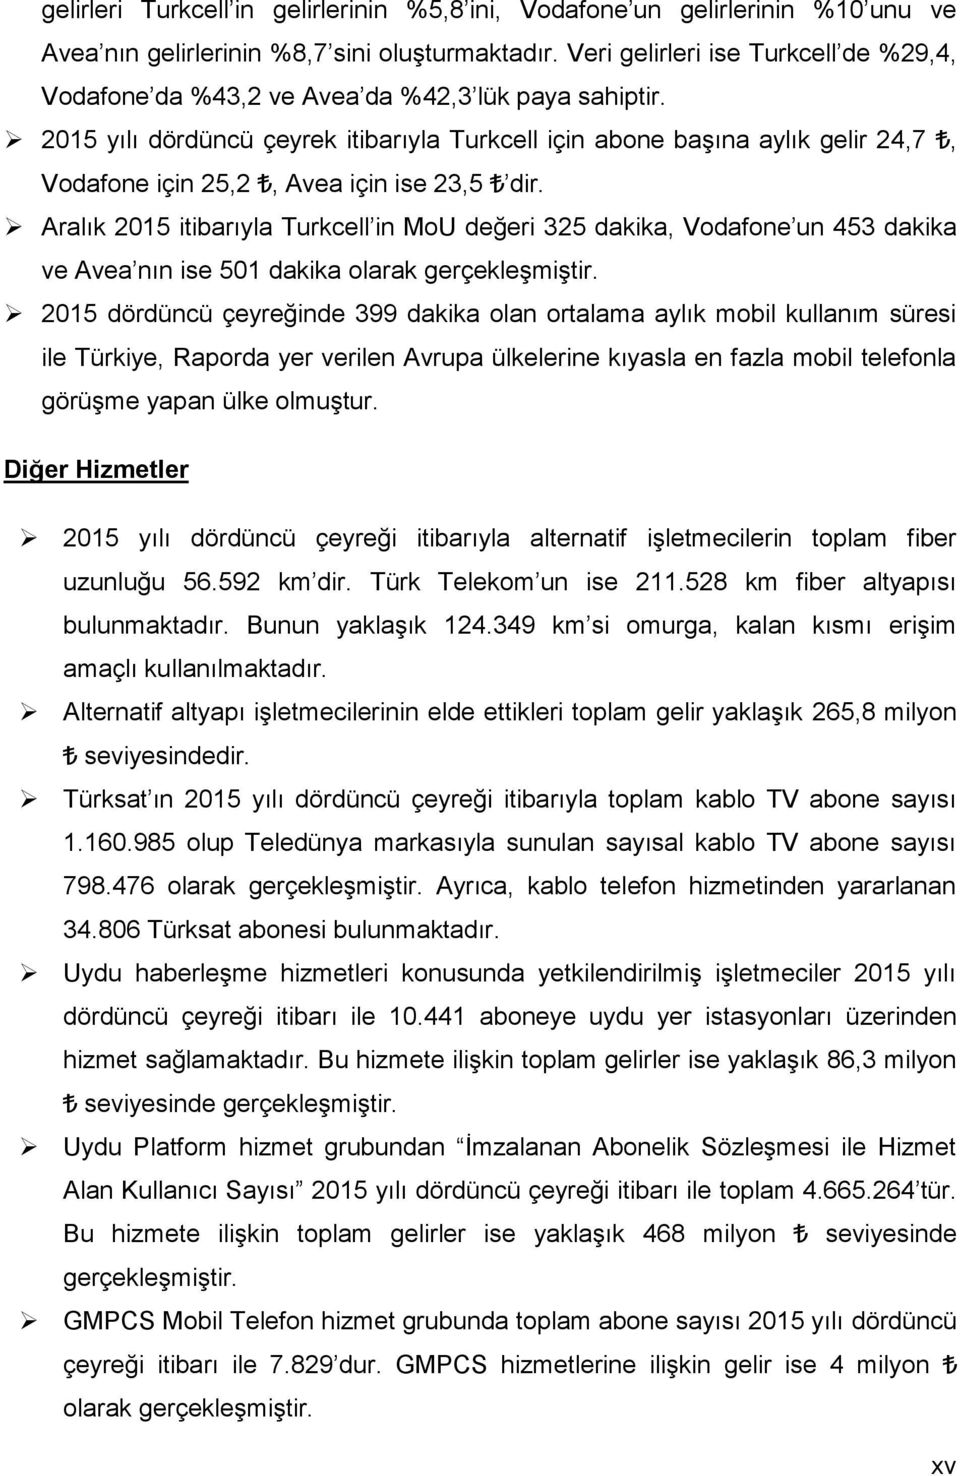 215 yılı dördüncü çeyrek itibarıyla Turkcell için abone başına aylık gelir 24,7, Vodafone için 25,2, Avea için ise 23,5 dir.